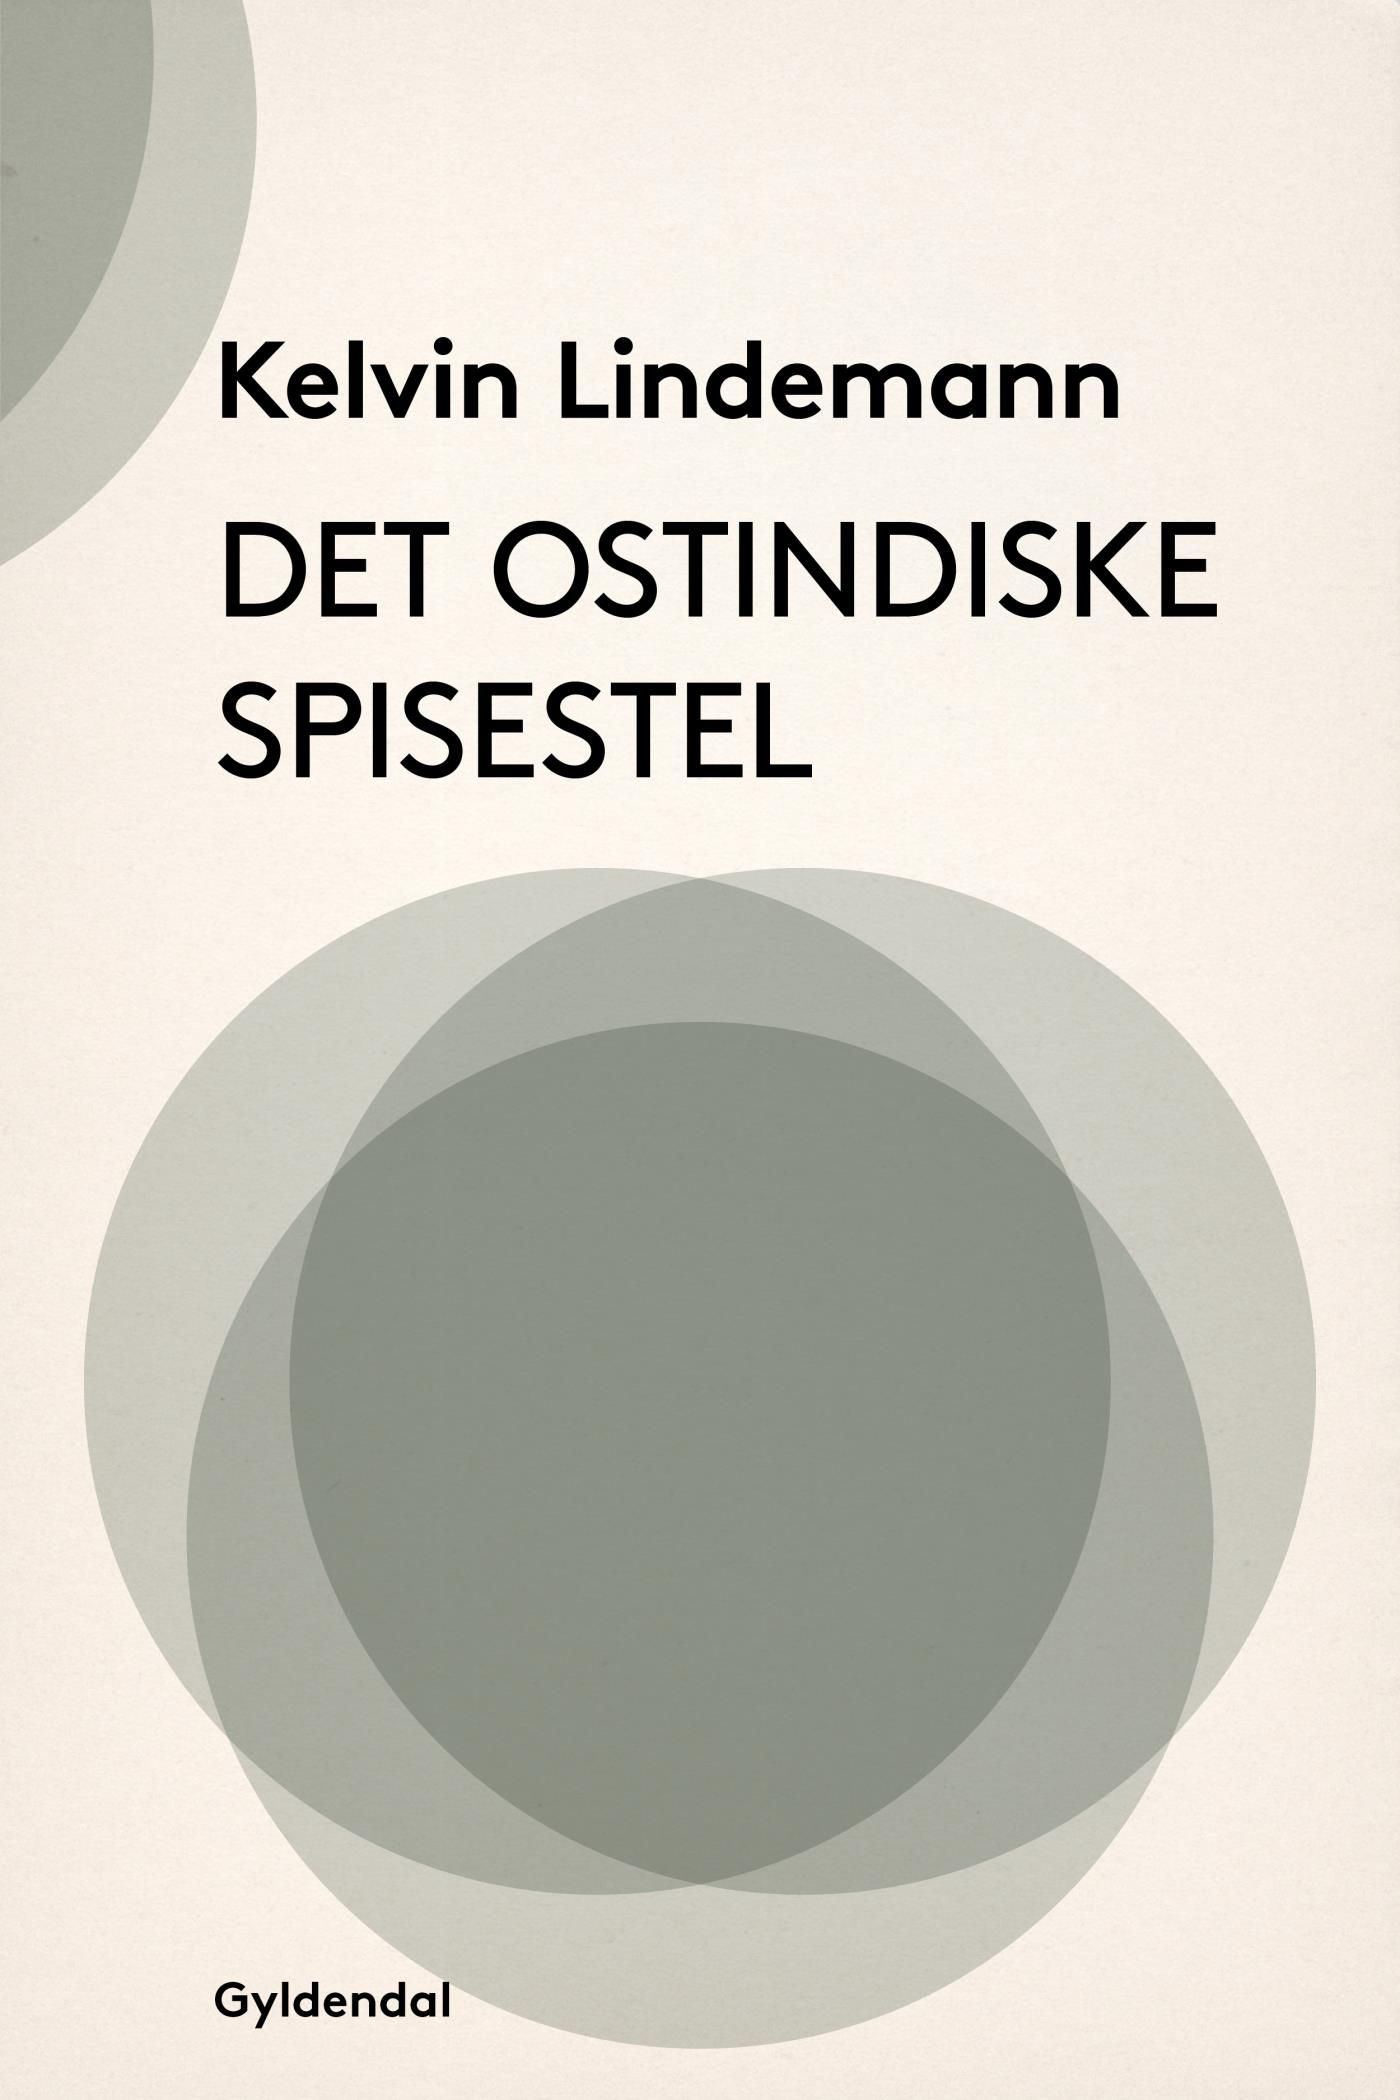 Det ostindiske spisestel, e-bok av Kelvin Lindemann